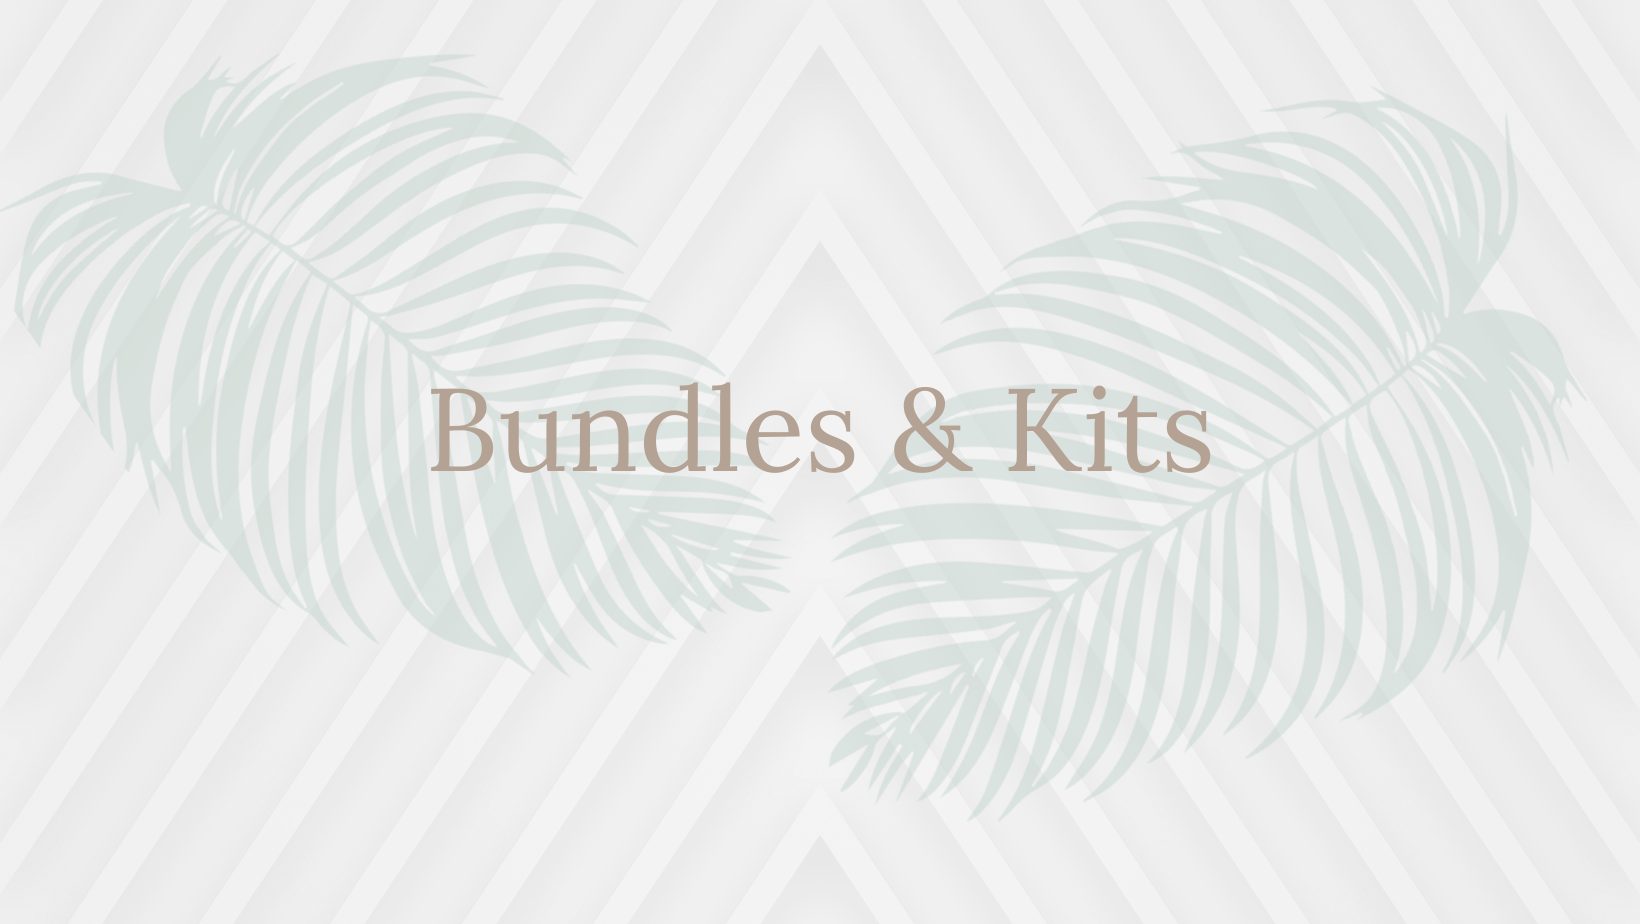 Bundles & Kits